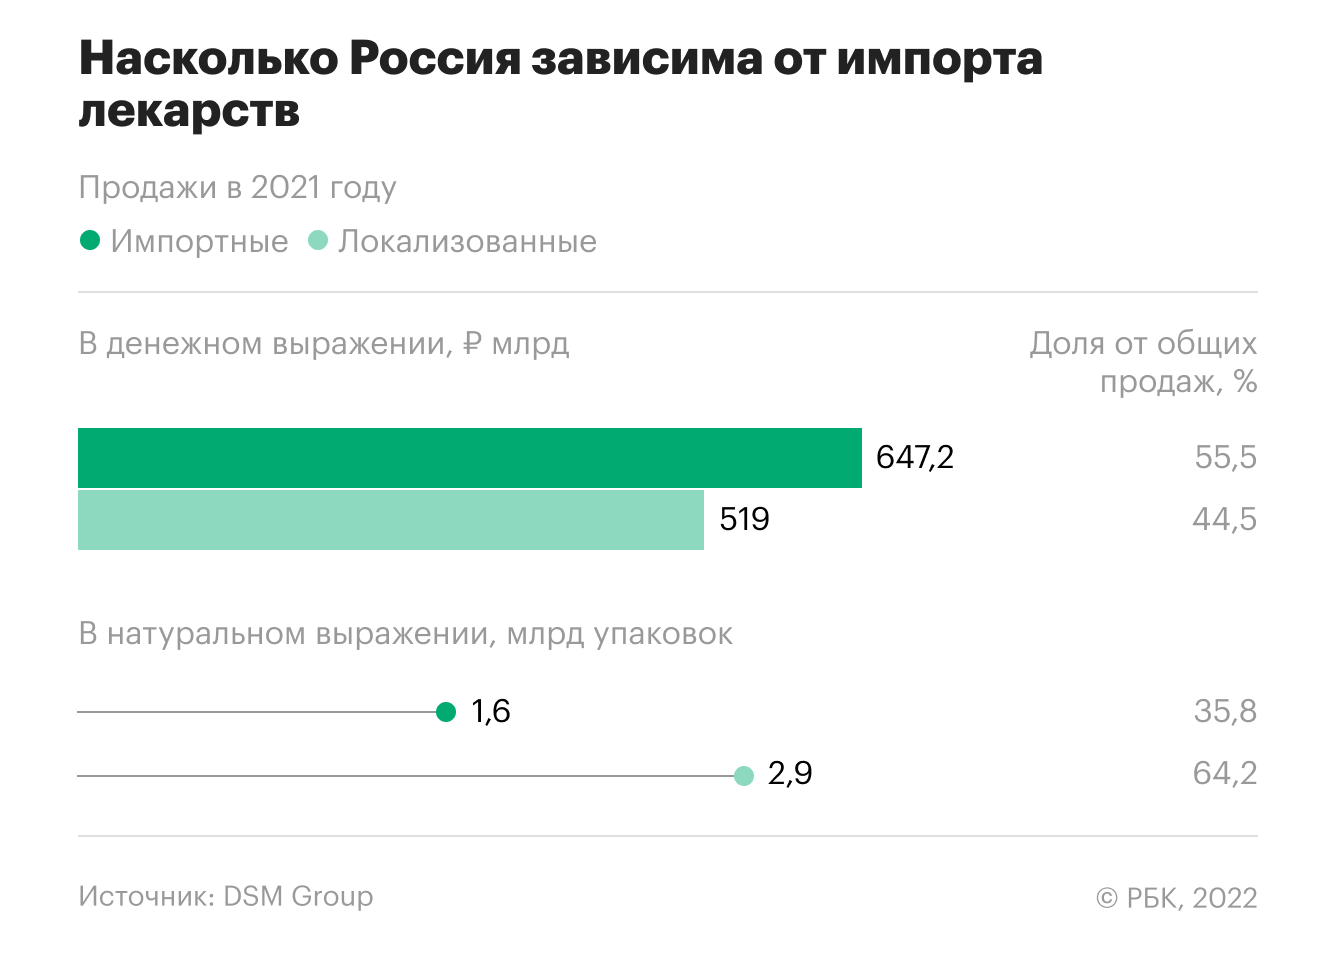 Насколько Россия зависима от импортных лекарств. Инфографика